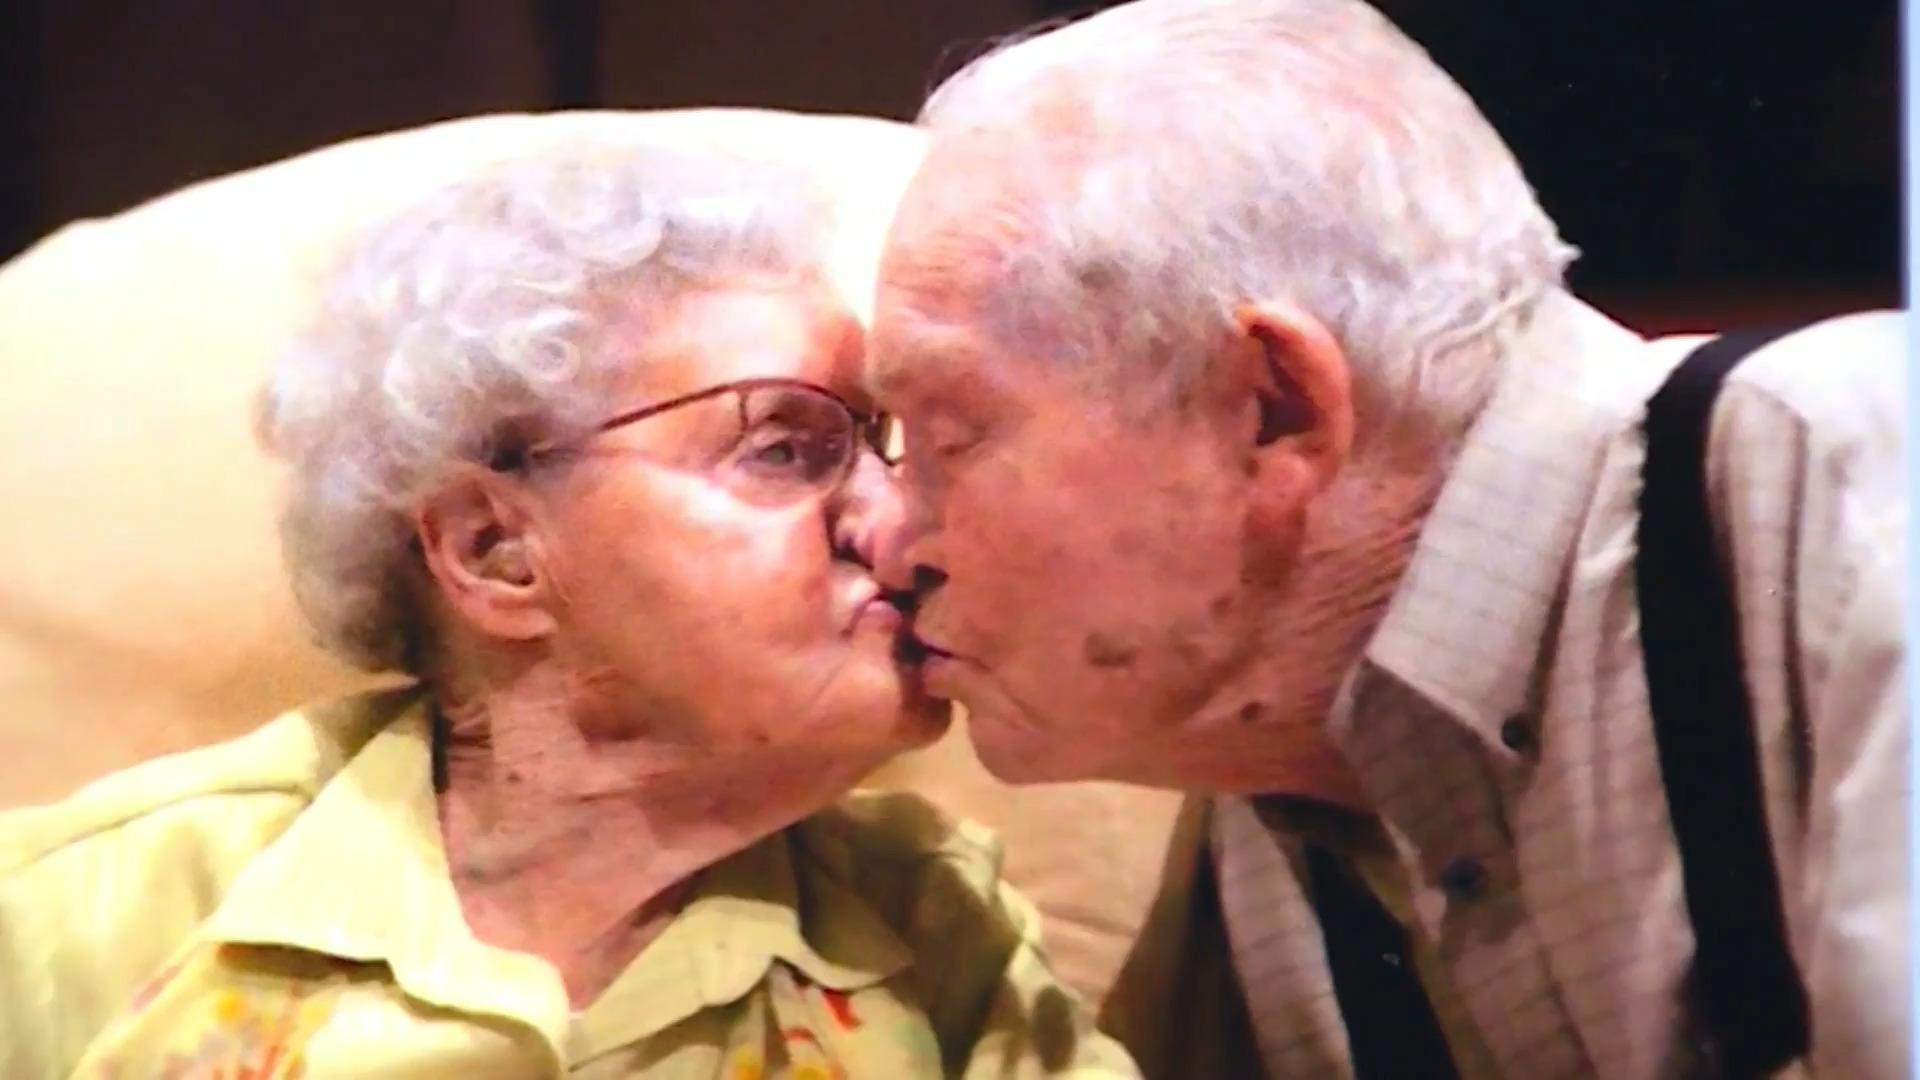 La coppia muore entro 20 ore dopo 79 anni di matrimonio "Finché morte non ci separi"